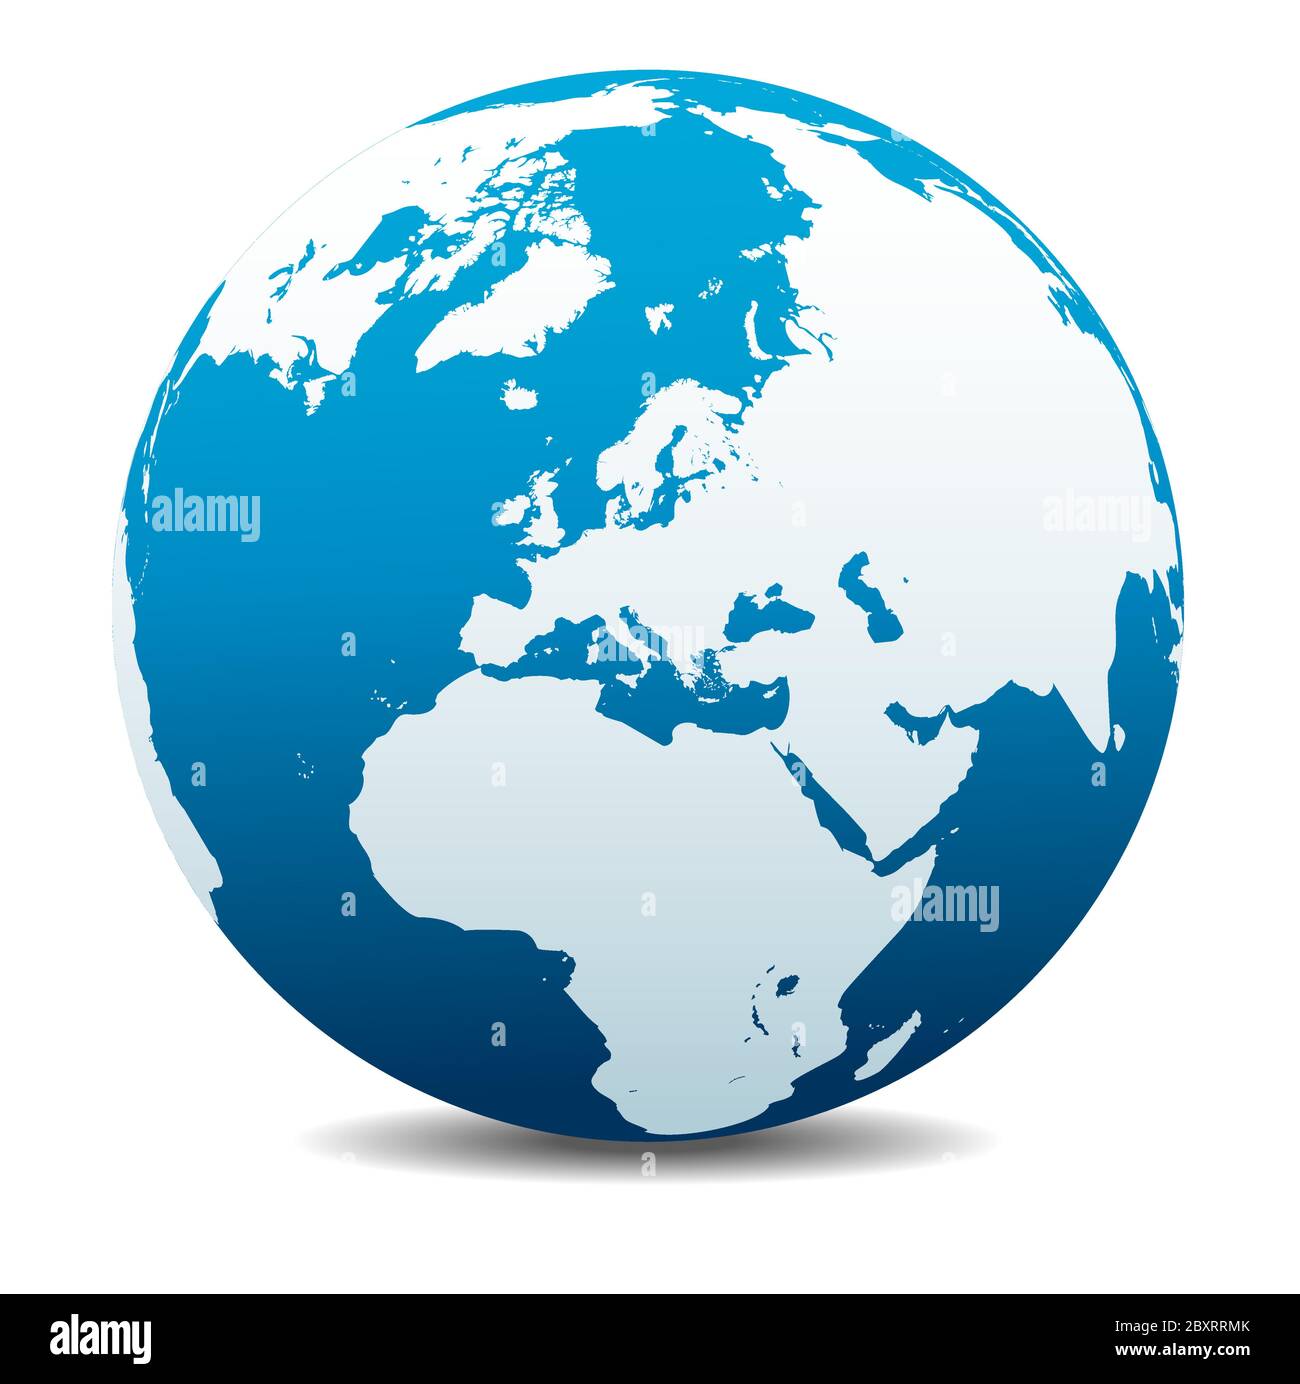 Pôle Nord Europe Haut du monde. Icône carte vectorielle du globe terrestre, Terre. Tous les éléments se trouvent sur des calques individuels dans le fichier vectoriel. Illustration de Vecteur